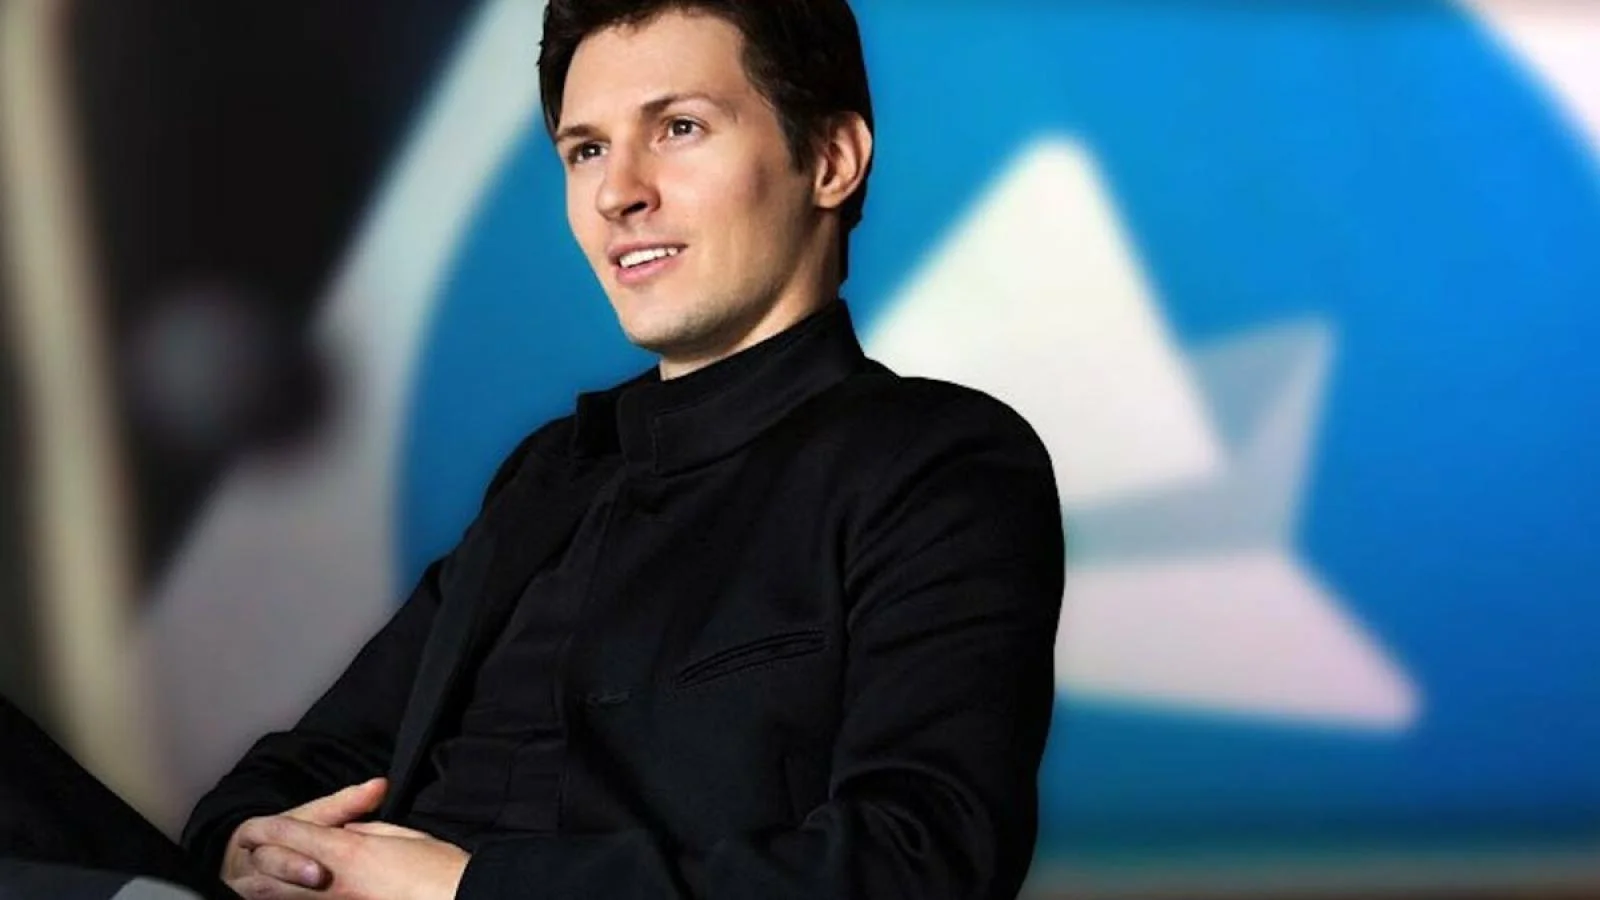 Павел Дуров: подписка Premium позволит покрыть расходы разработчиков на Telegram